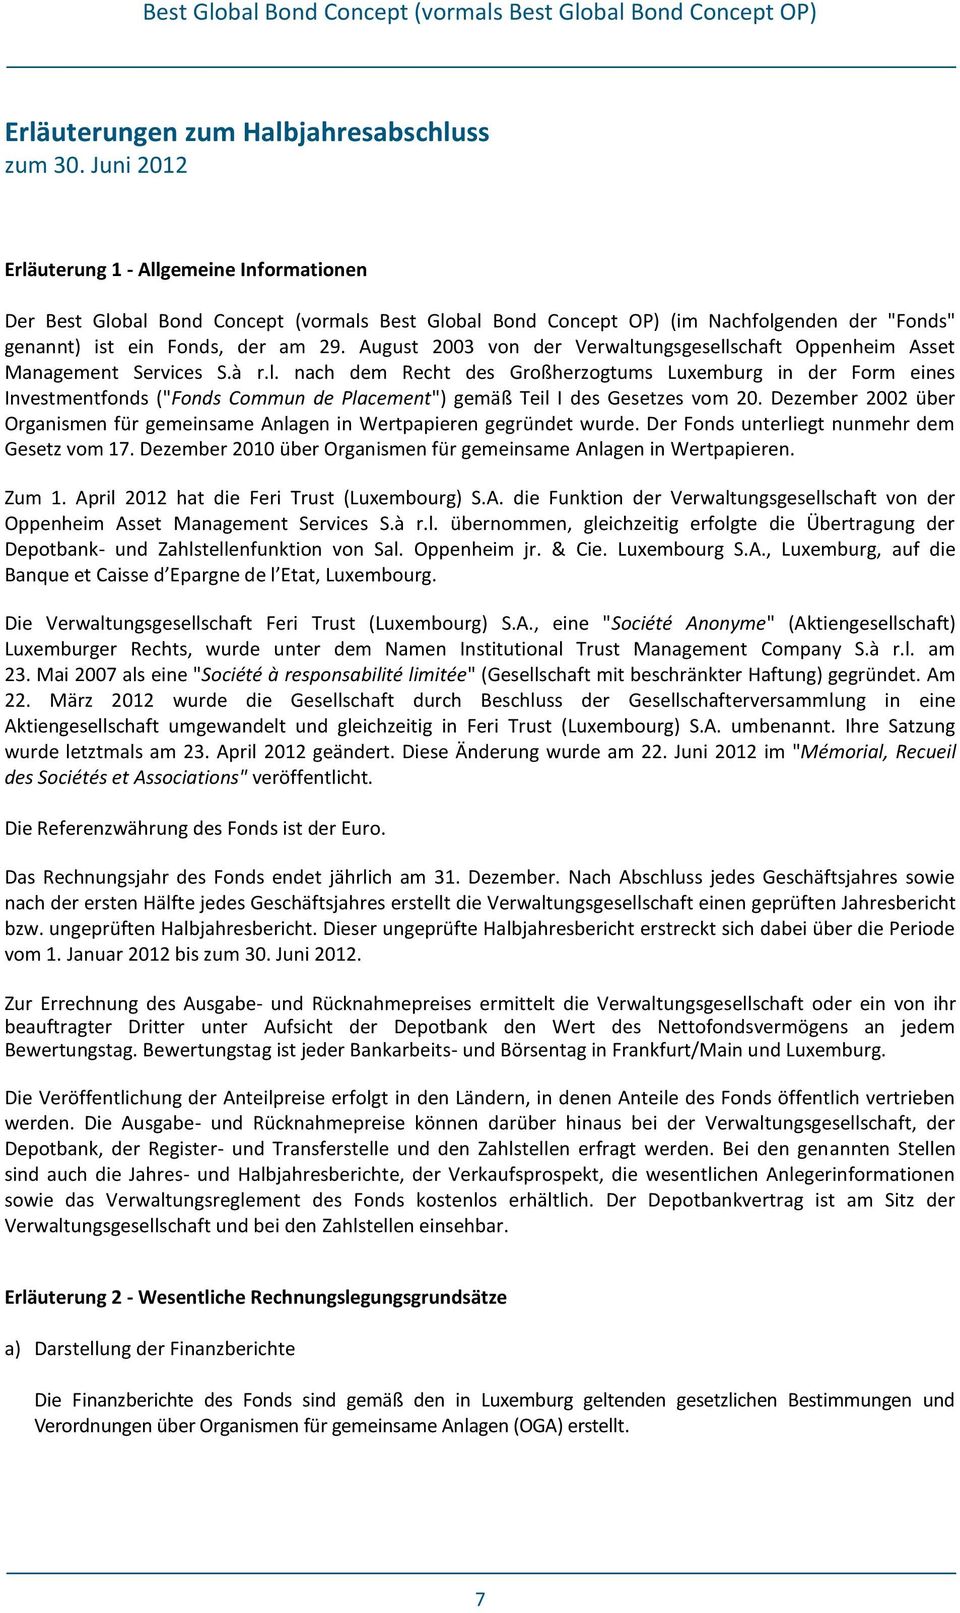 August 2003 von der Verwaltungsgesellschaft Oppenheim Asset Management Services S.à r.l. nach dem Recht des Großherzogtums Luxemburg in der Form eines Investmentfonds ("Fonds Commun de Placement") gemäß Teil I des Gesetzes vom 20.